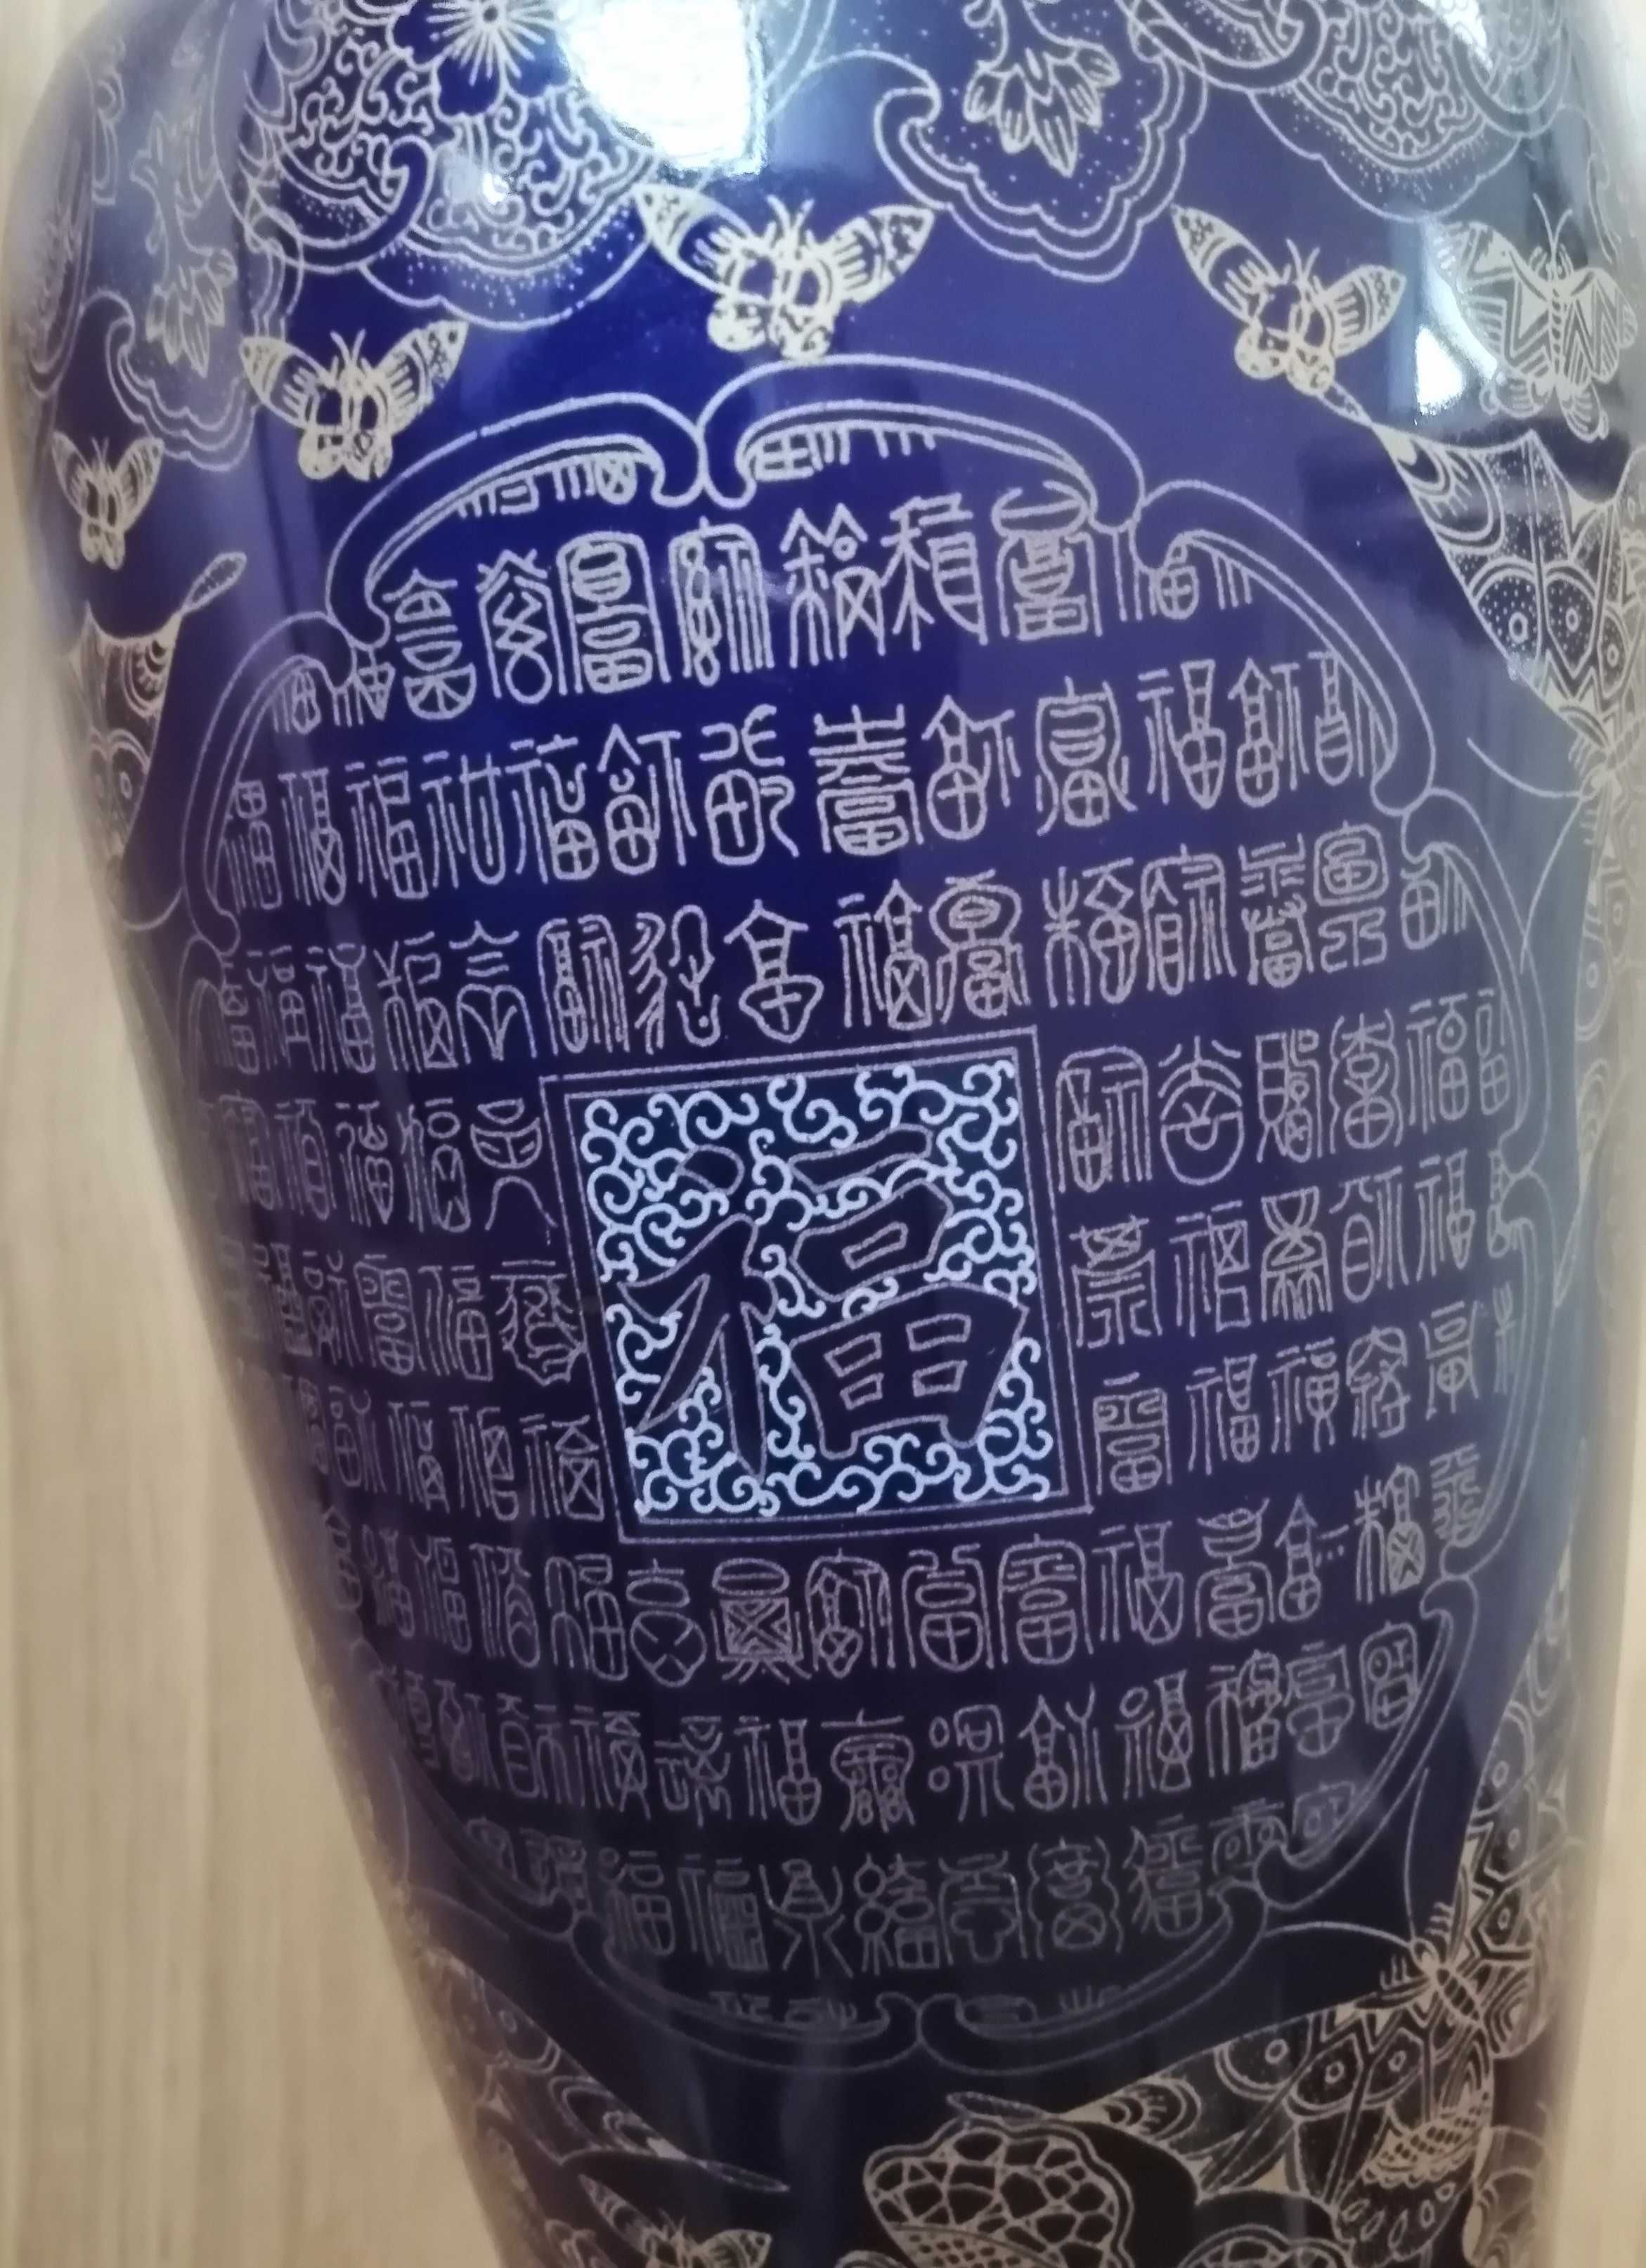 Niebieski porcelanowy wazon chiński / waza chińska